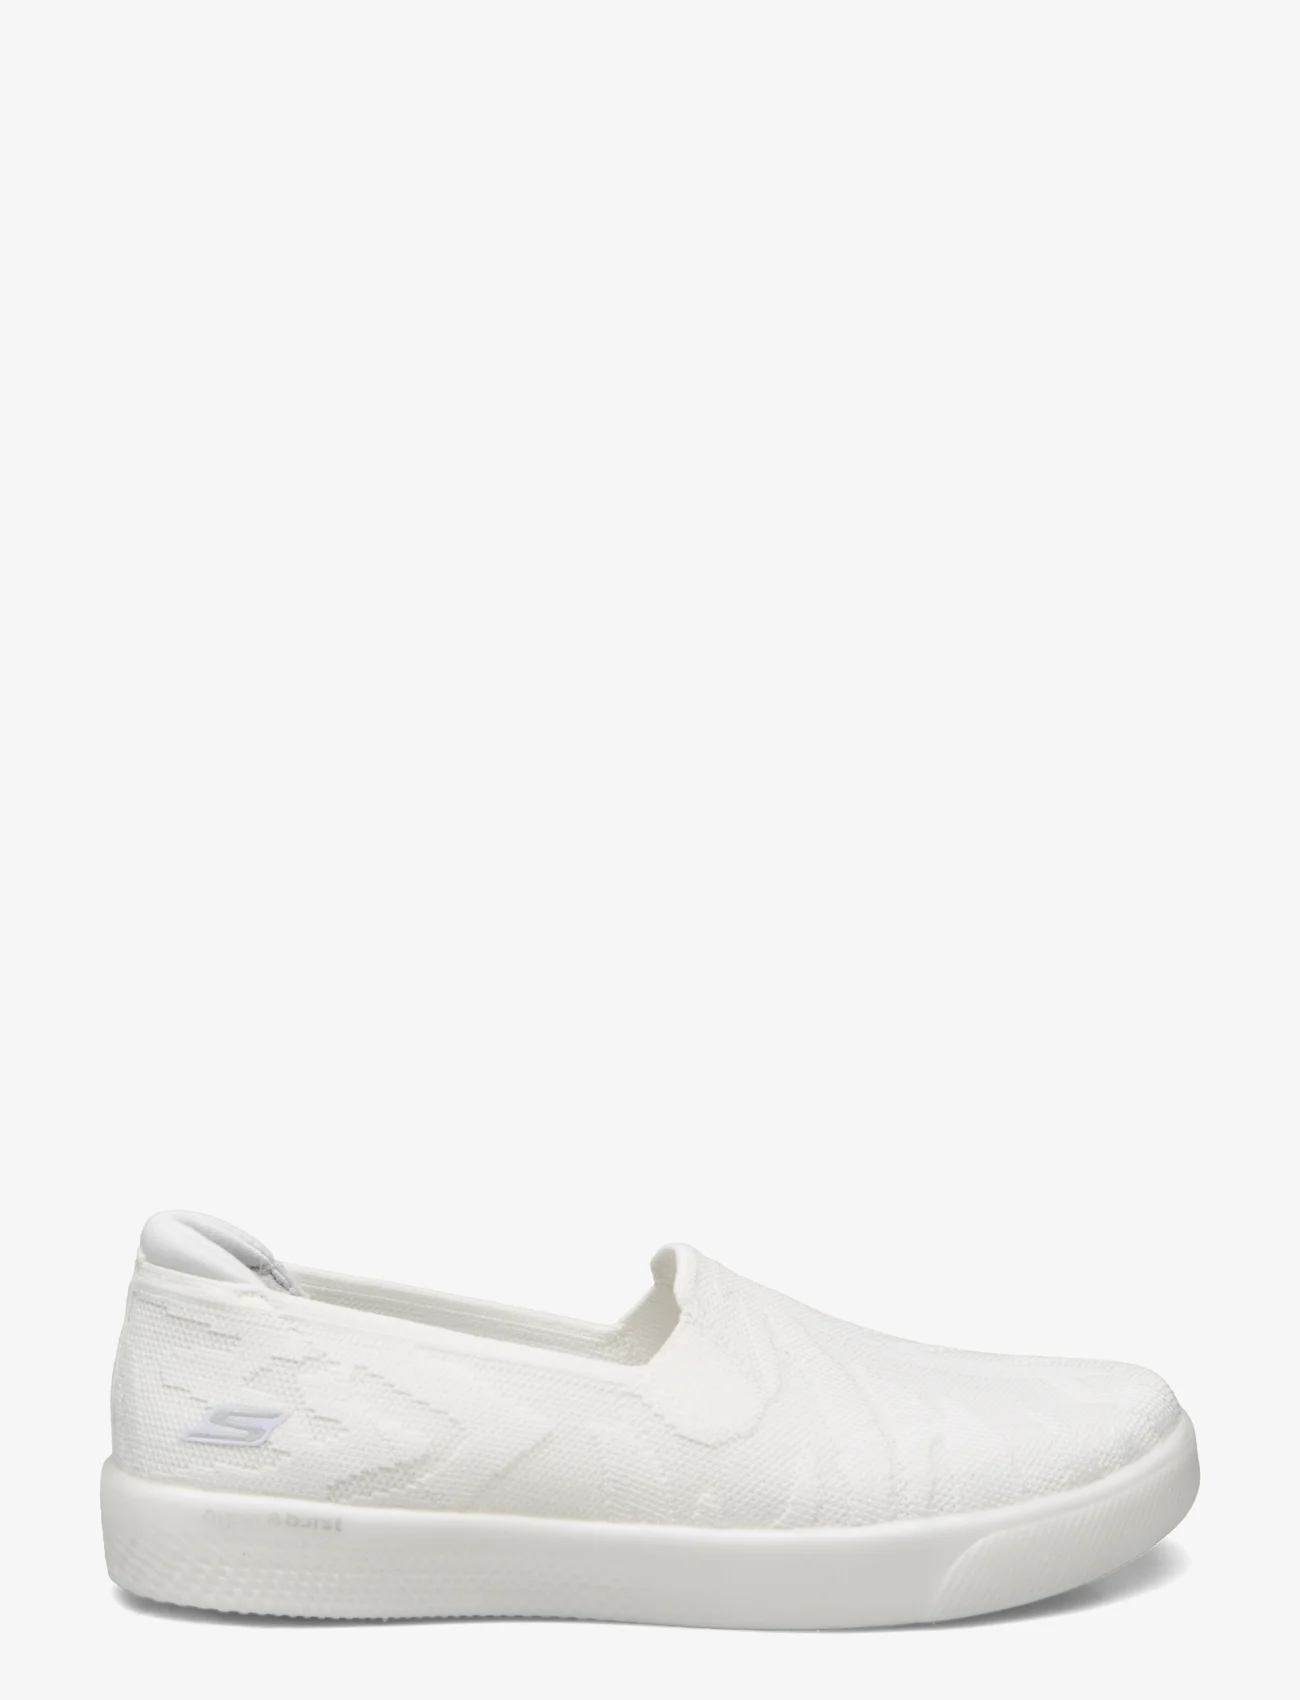 Skechers - Womens Hyper Vulc - Alluring - slip-on sneakers - wht white - 1